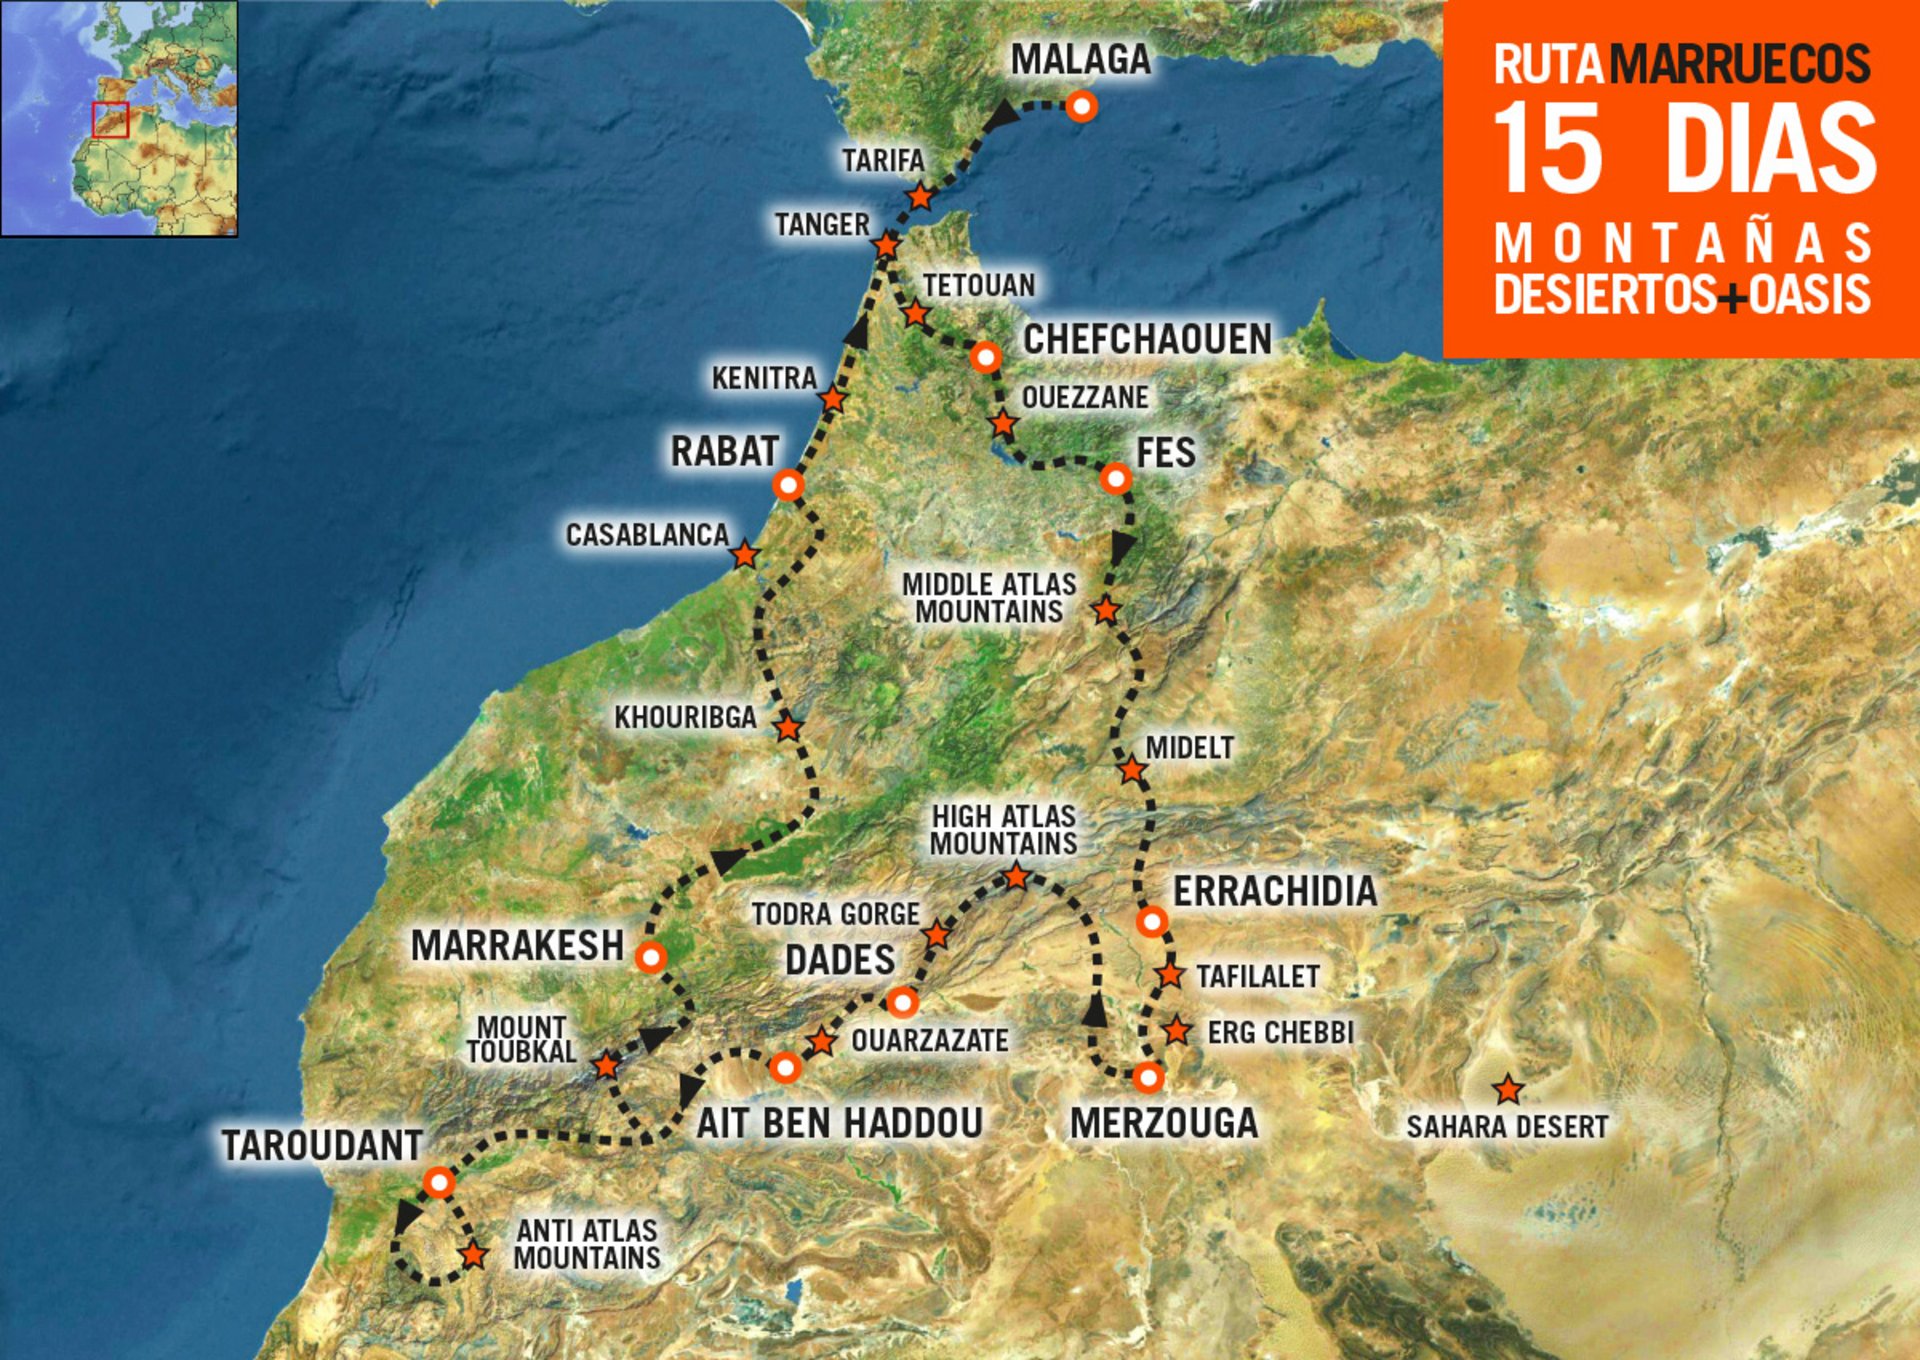 Mapa del Viaje en moto por Marruecos